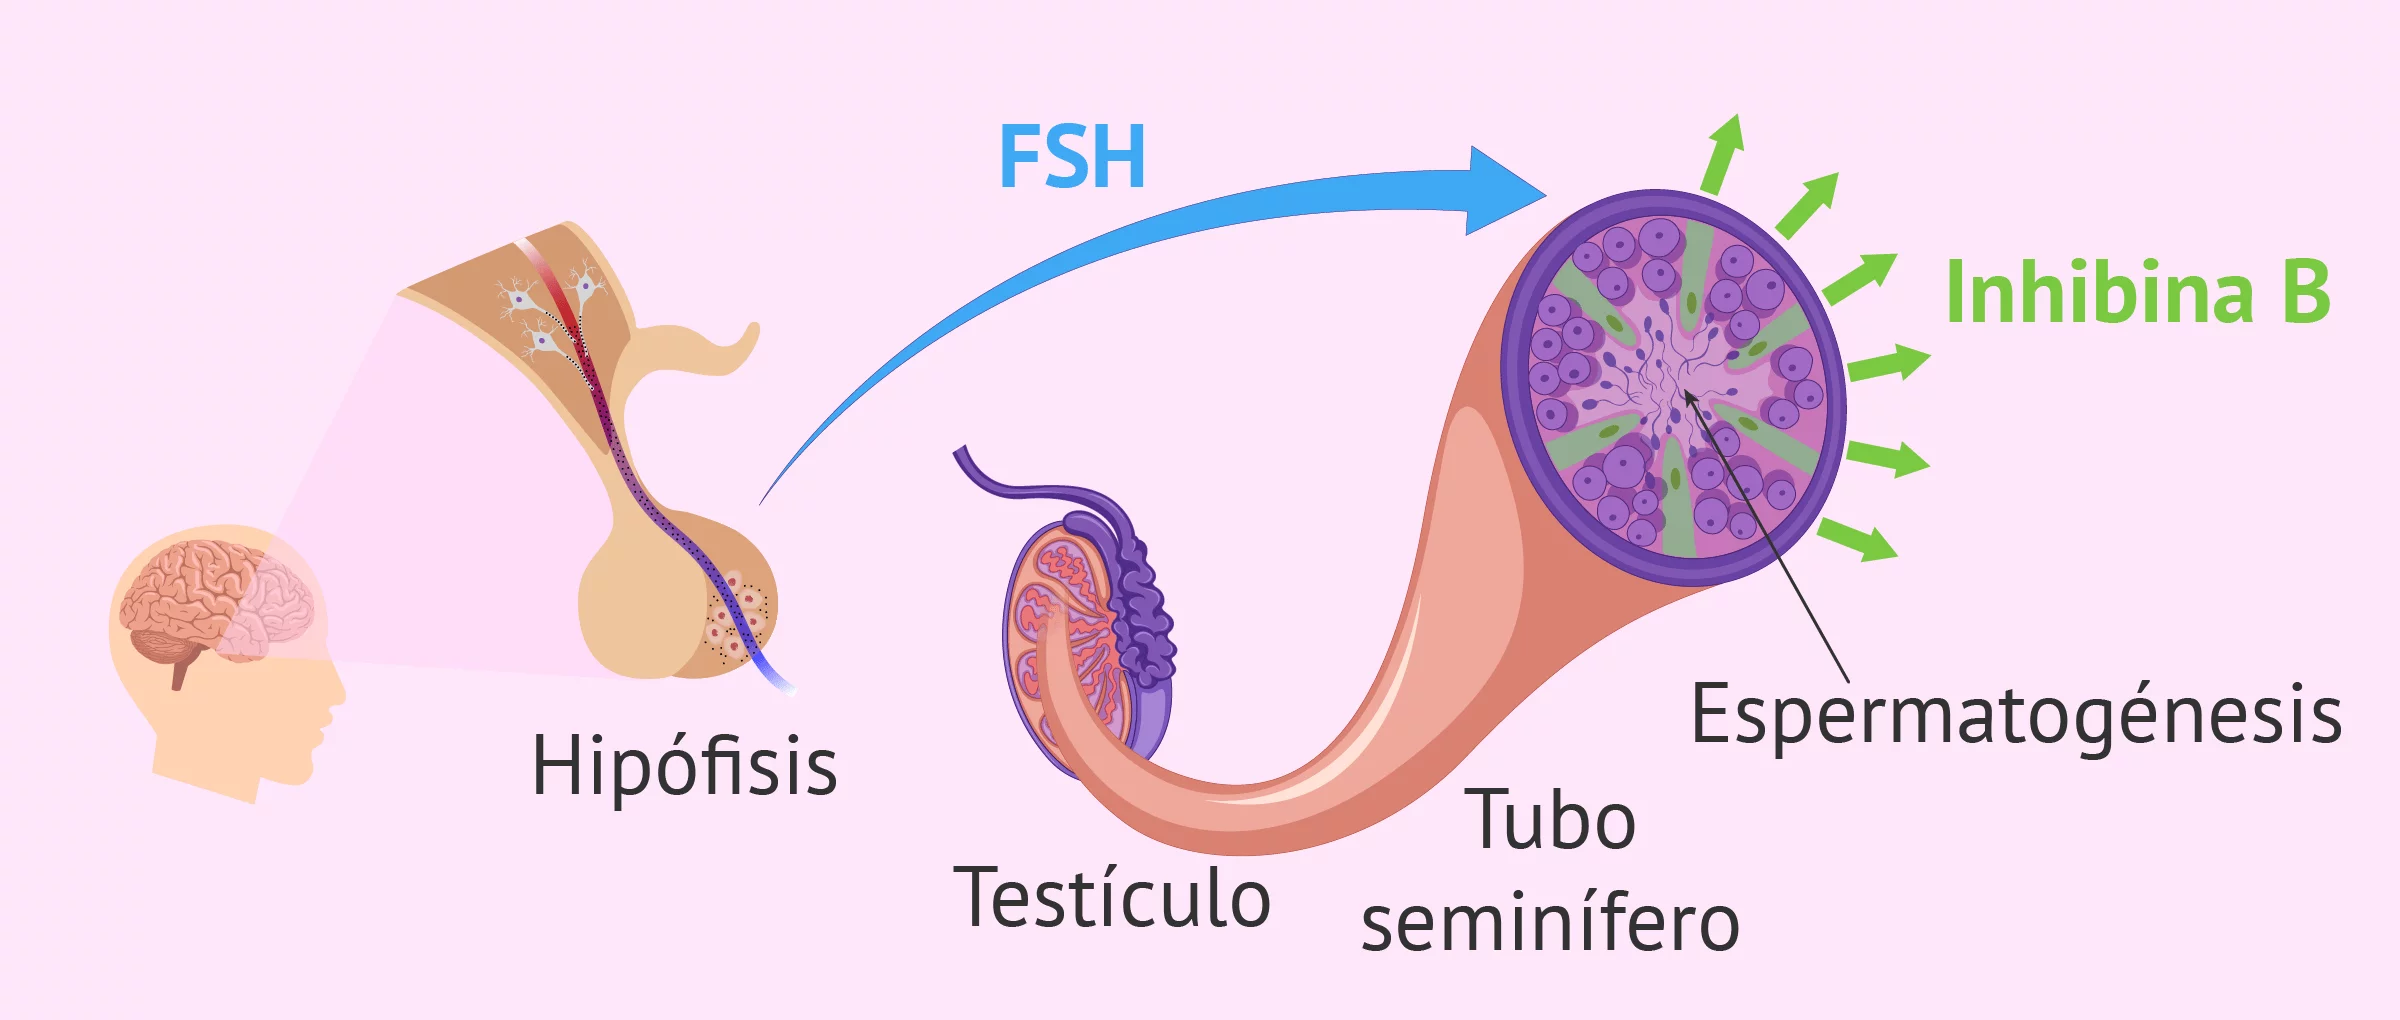 Hormonas que actúan en la espermatogénesis